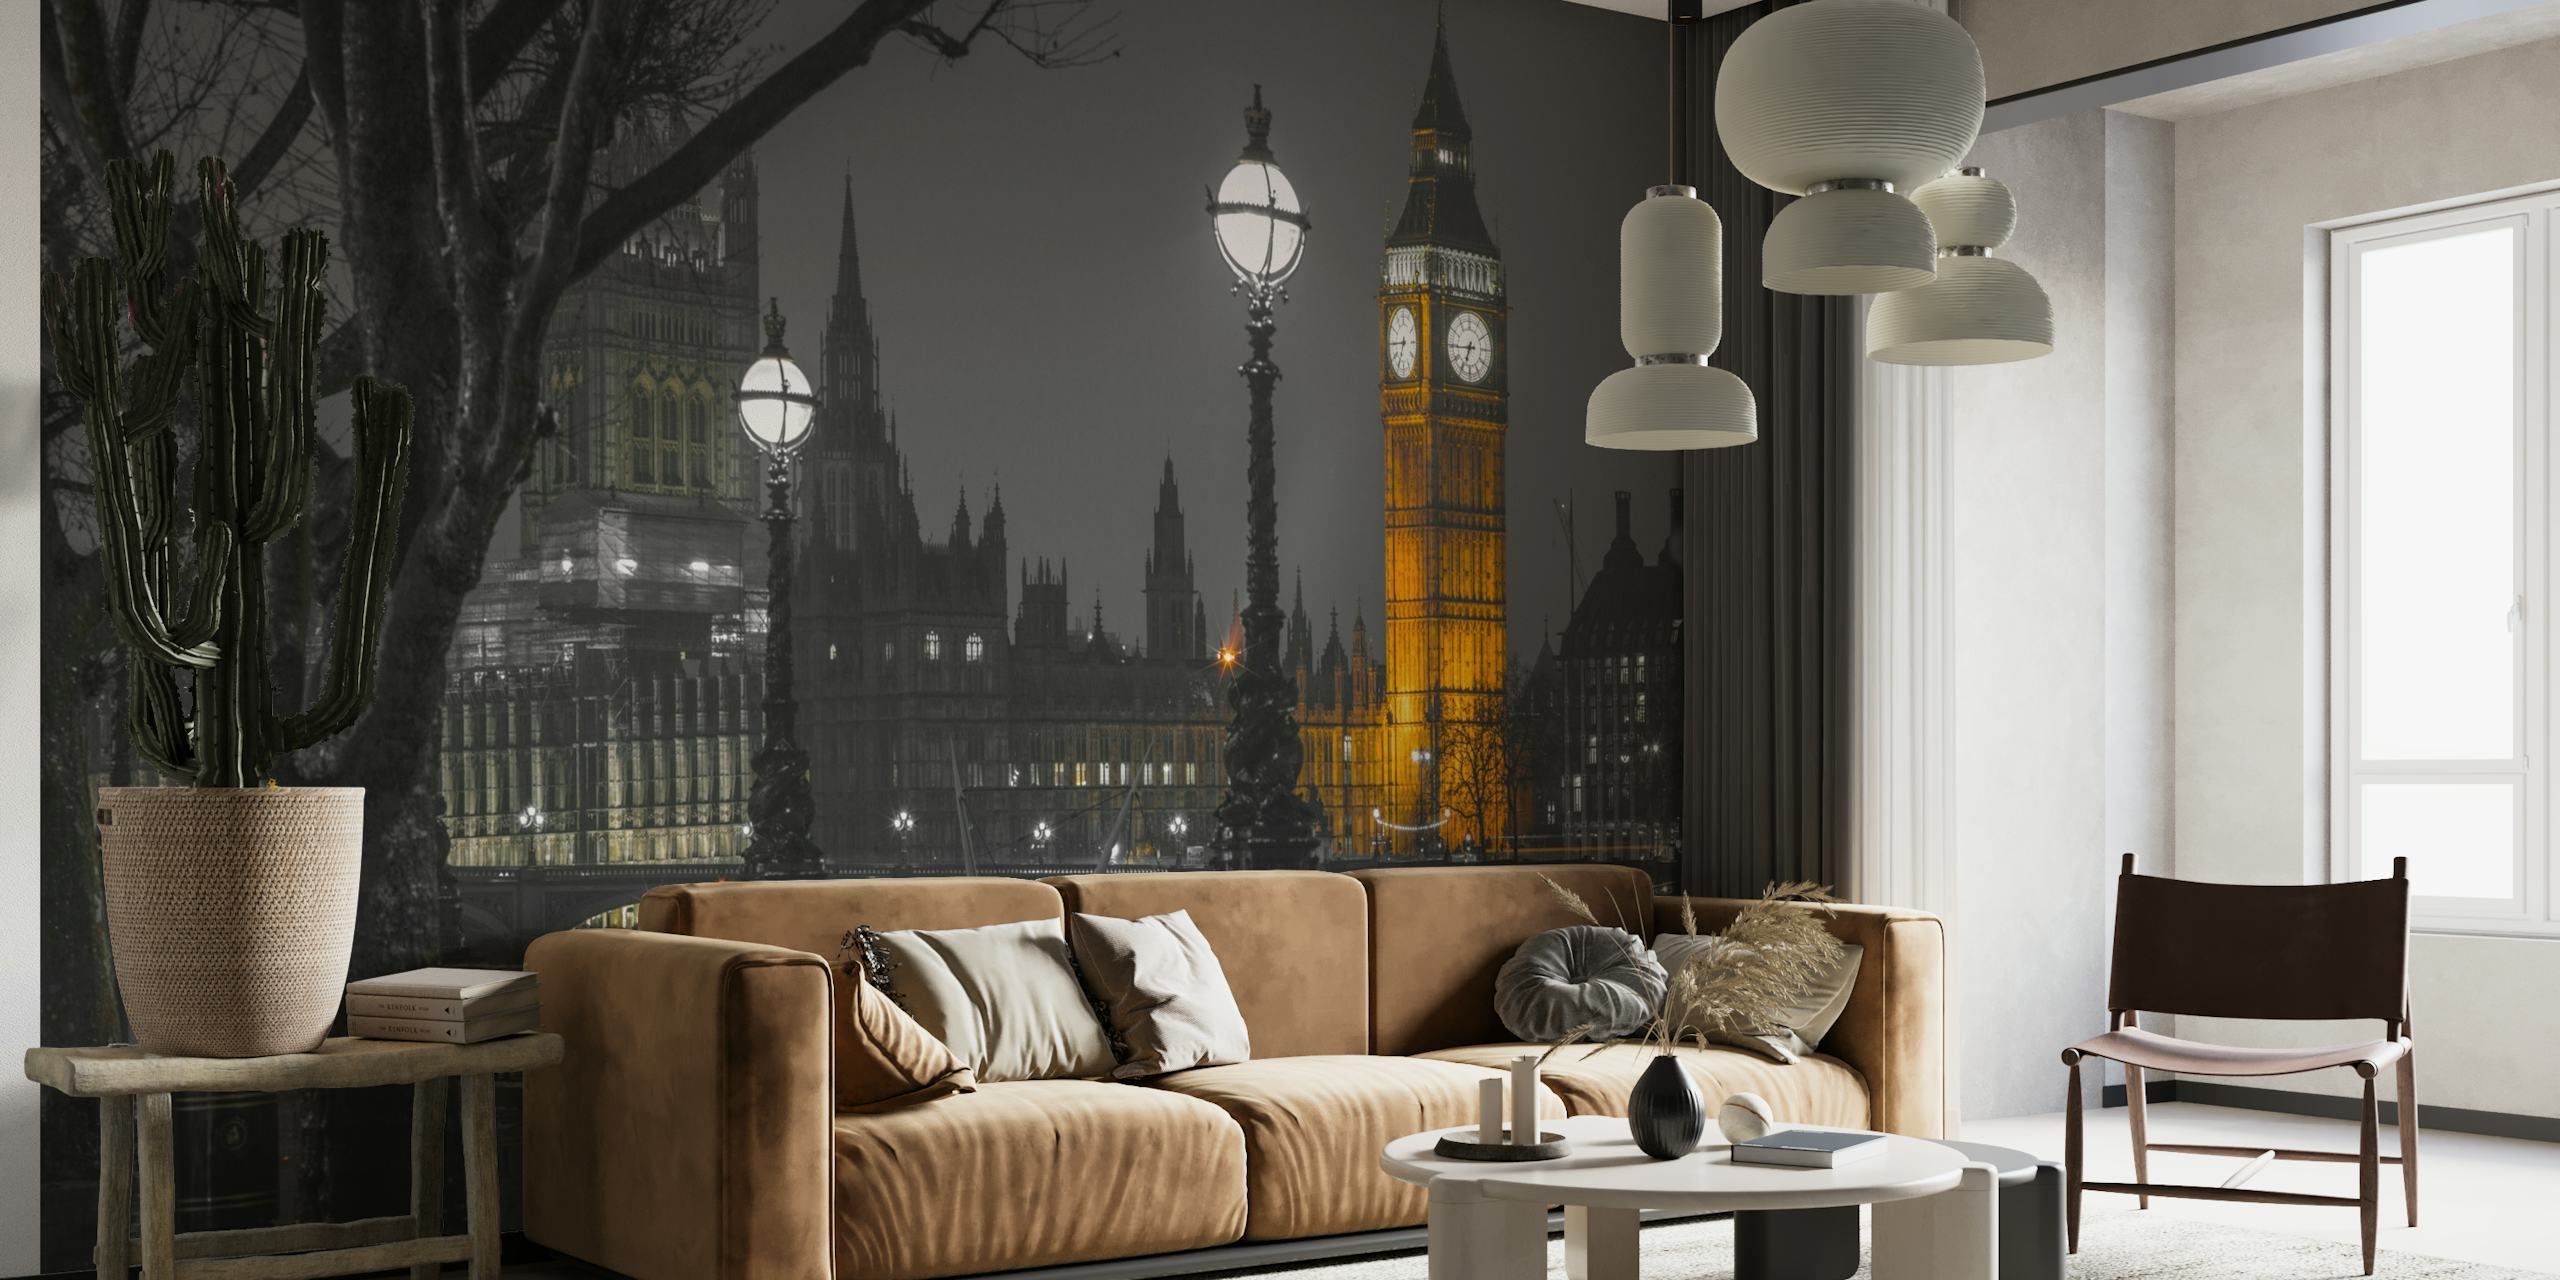 Czarno-biała fototapeta przedstawiająca pejzaż Londynu o zmierzchu z oświetloną Elizabeth Tower